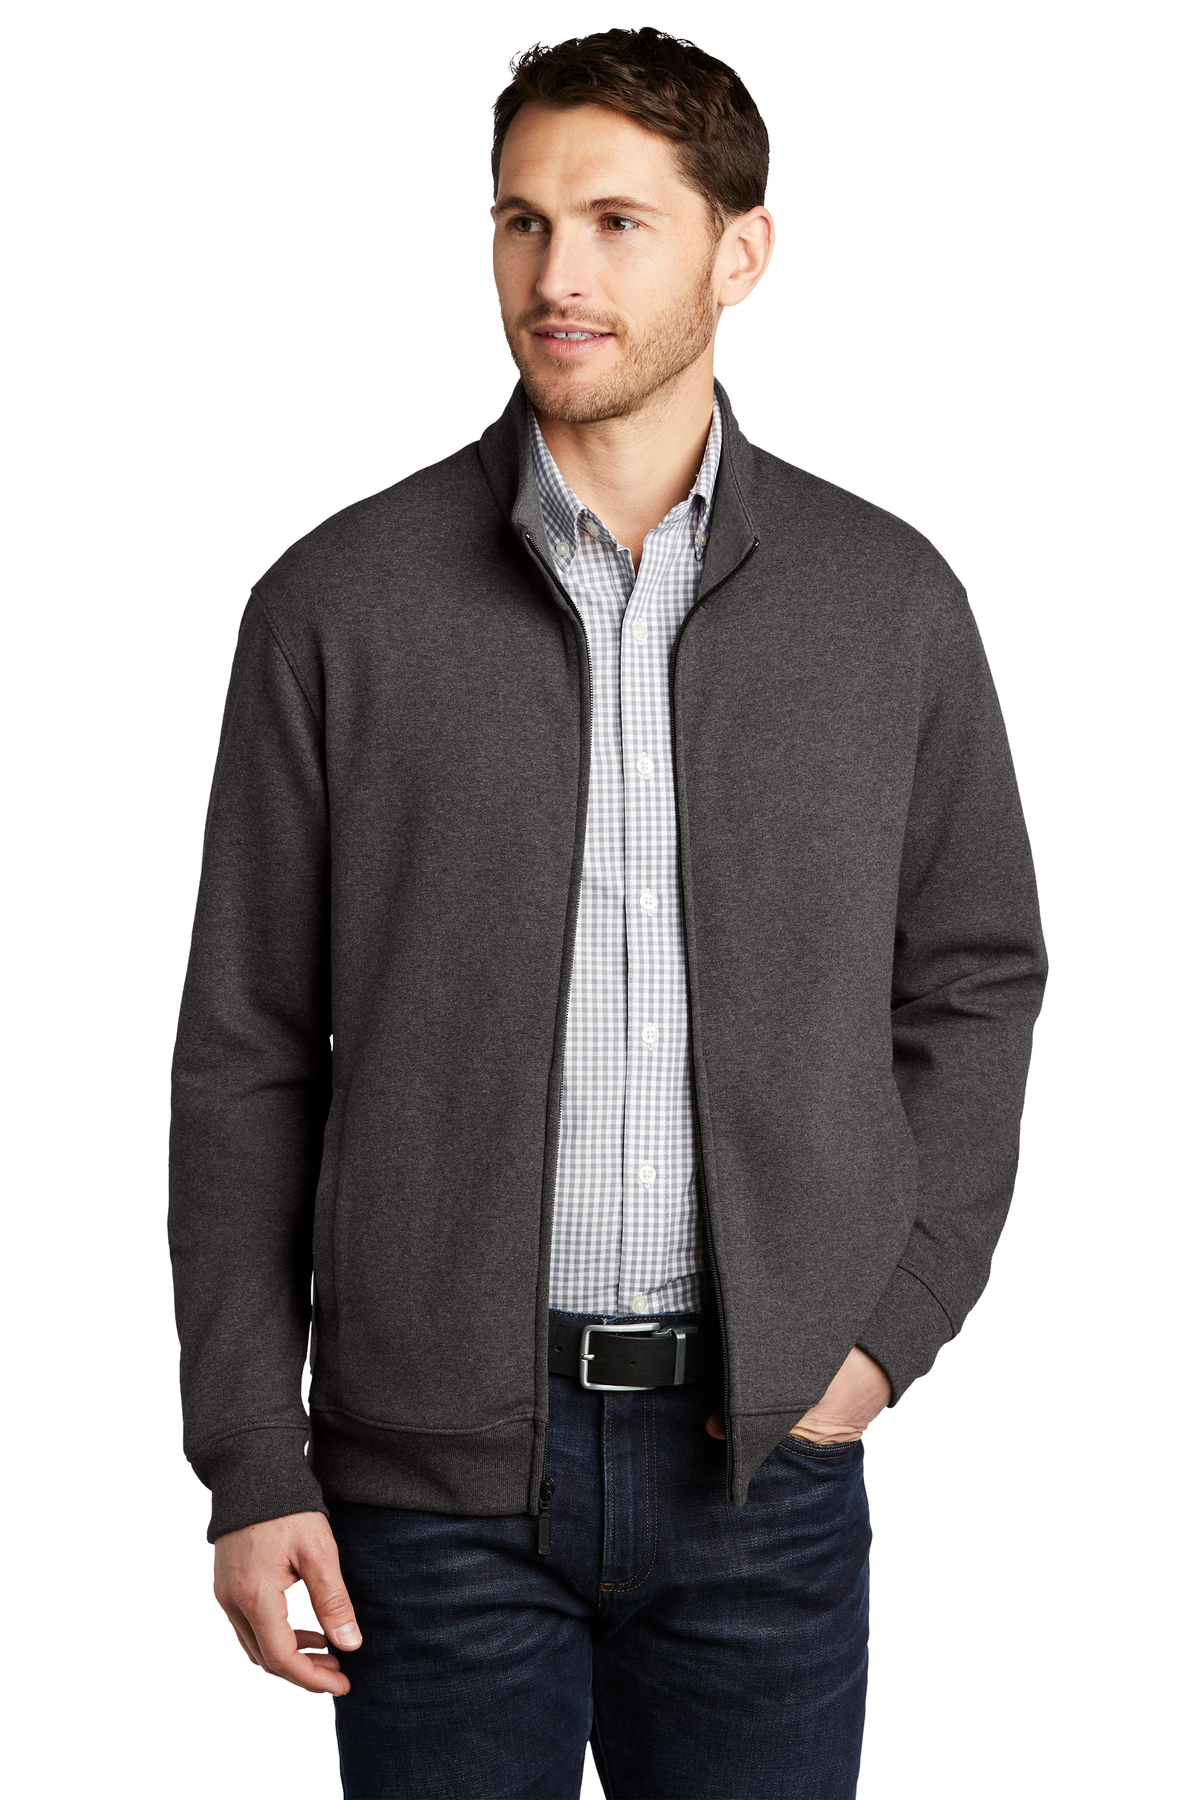 Port Authority Embroidered Men's Interlock Full-Zip | Sweatshirts ...